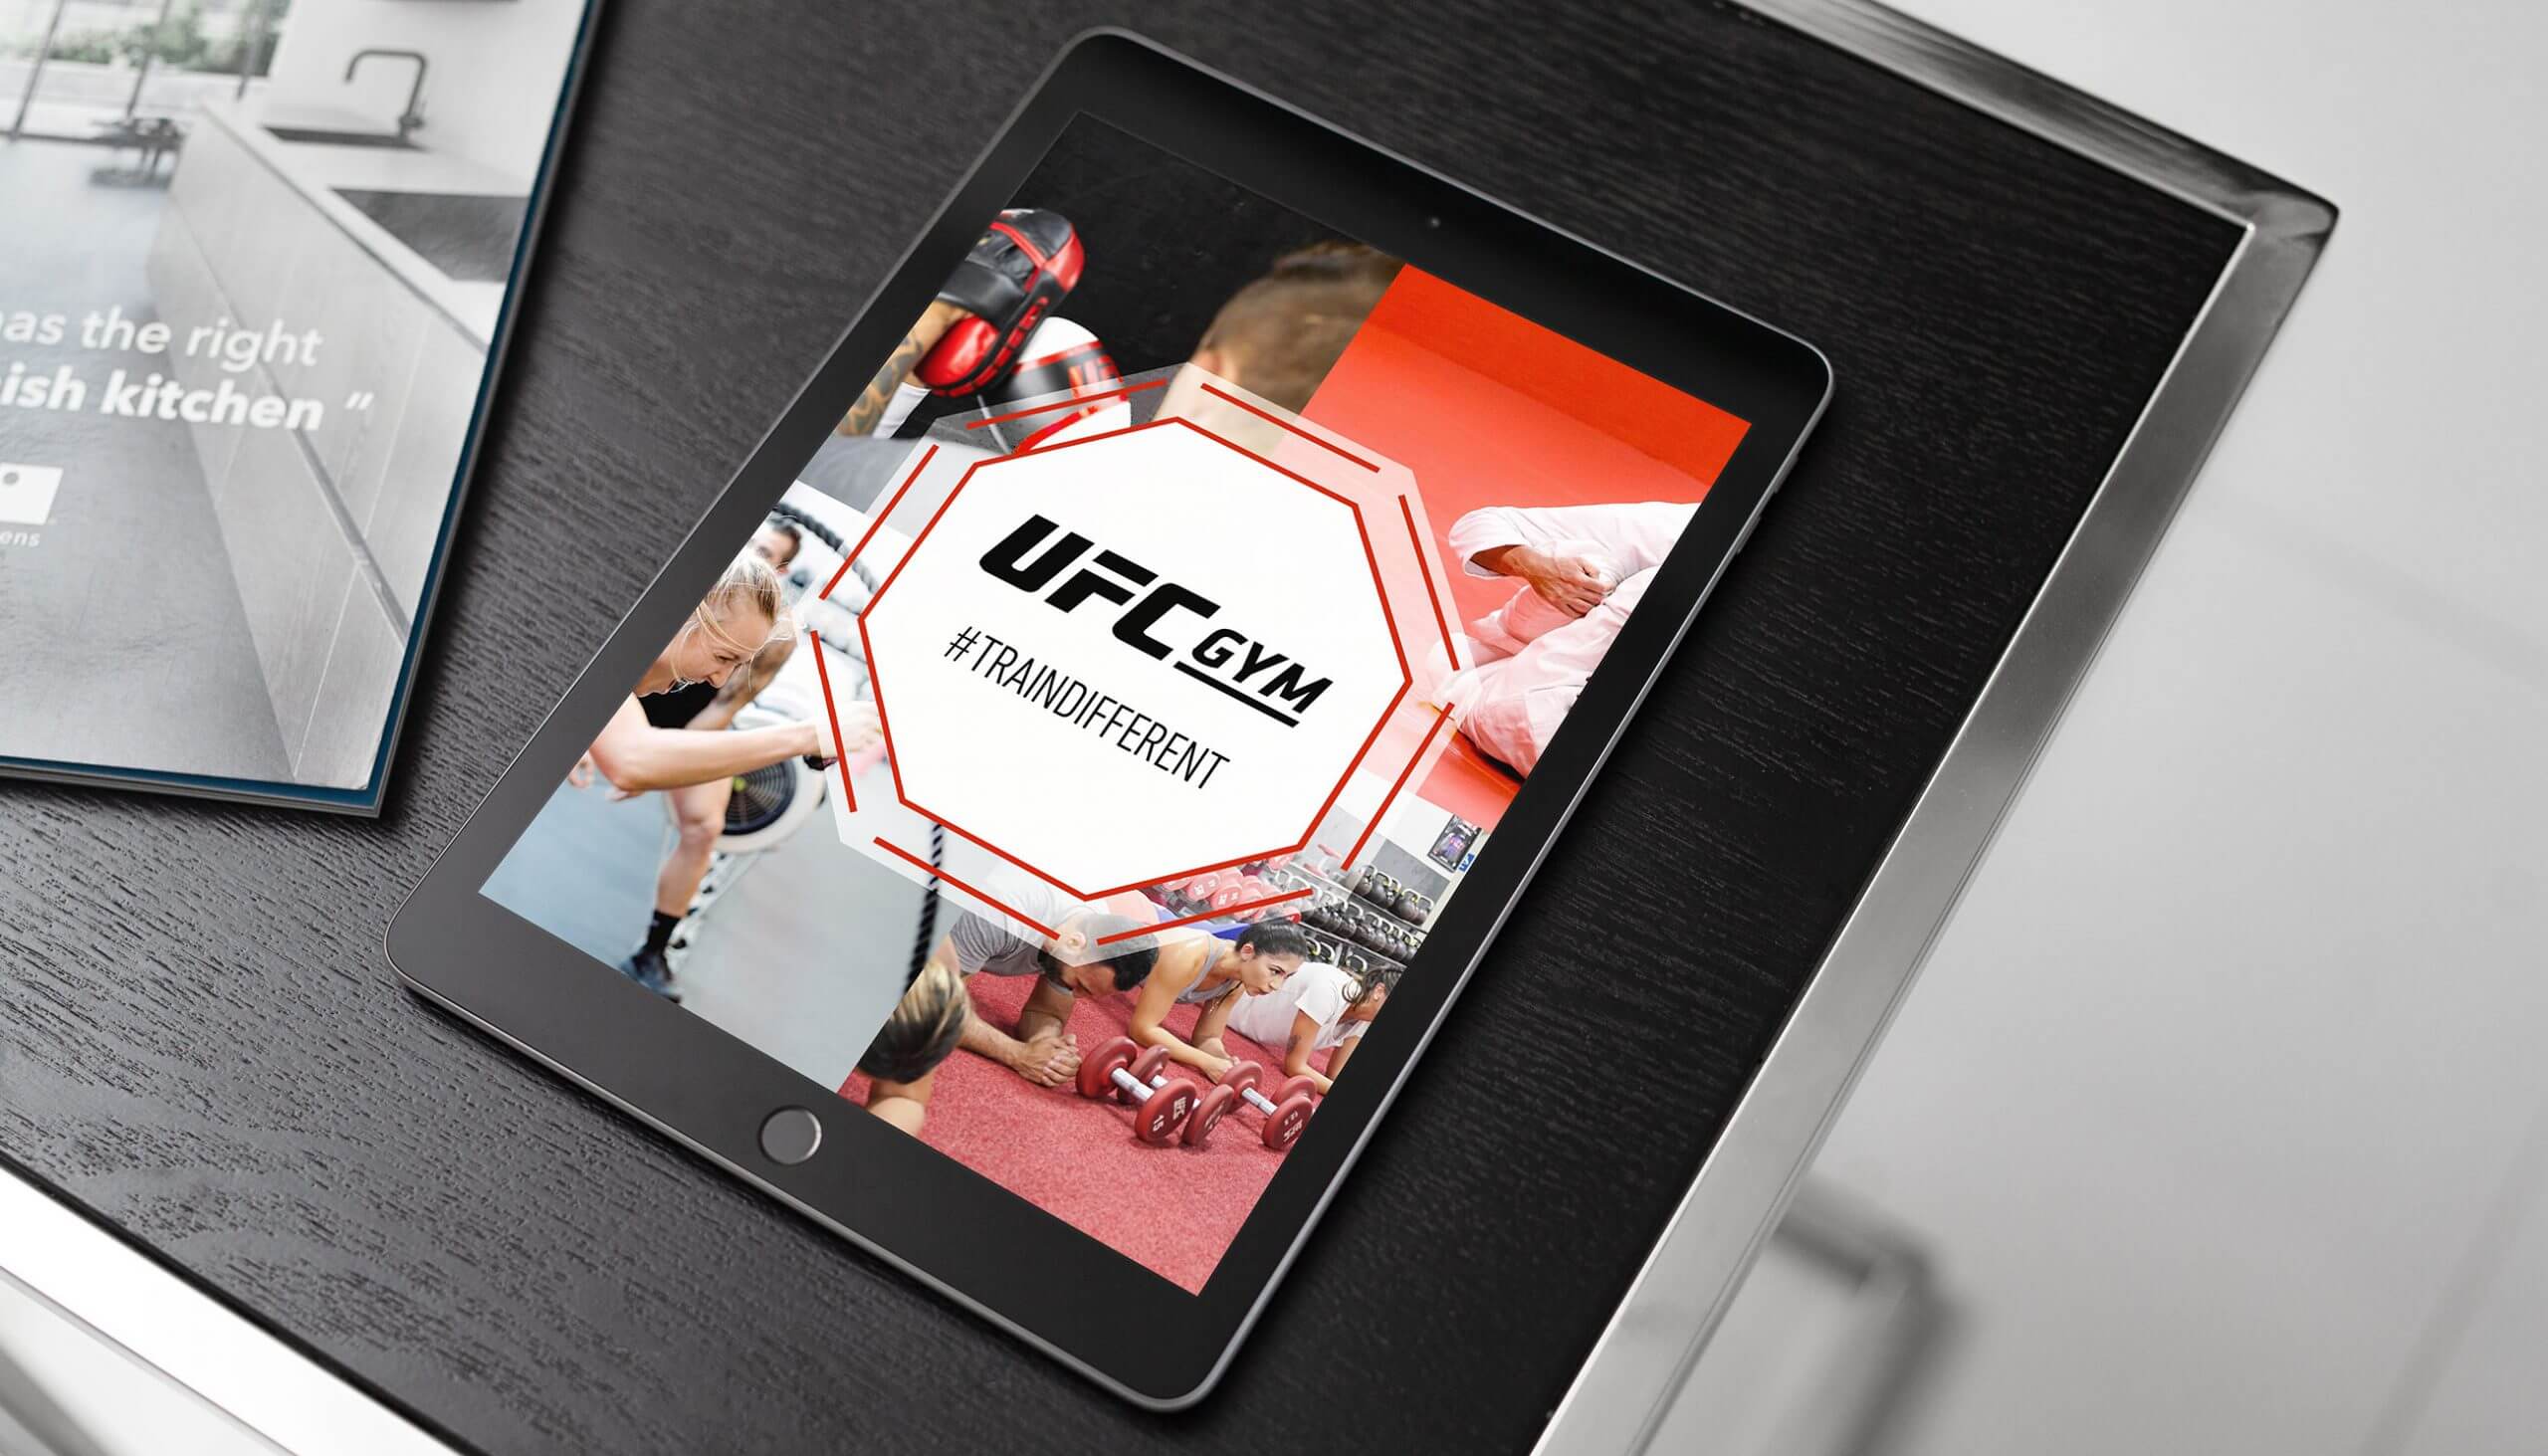 UFC Gym on iPad